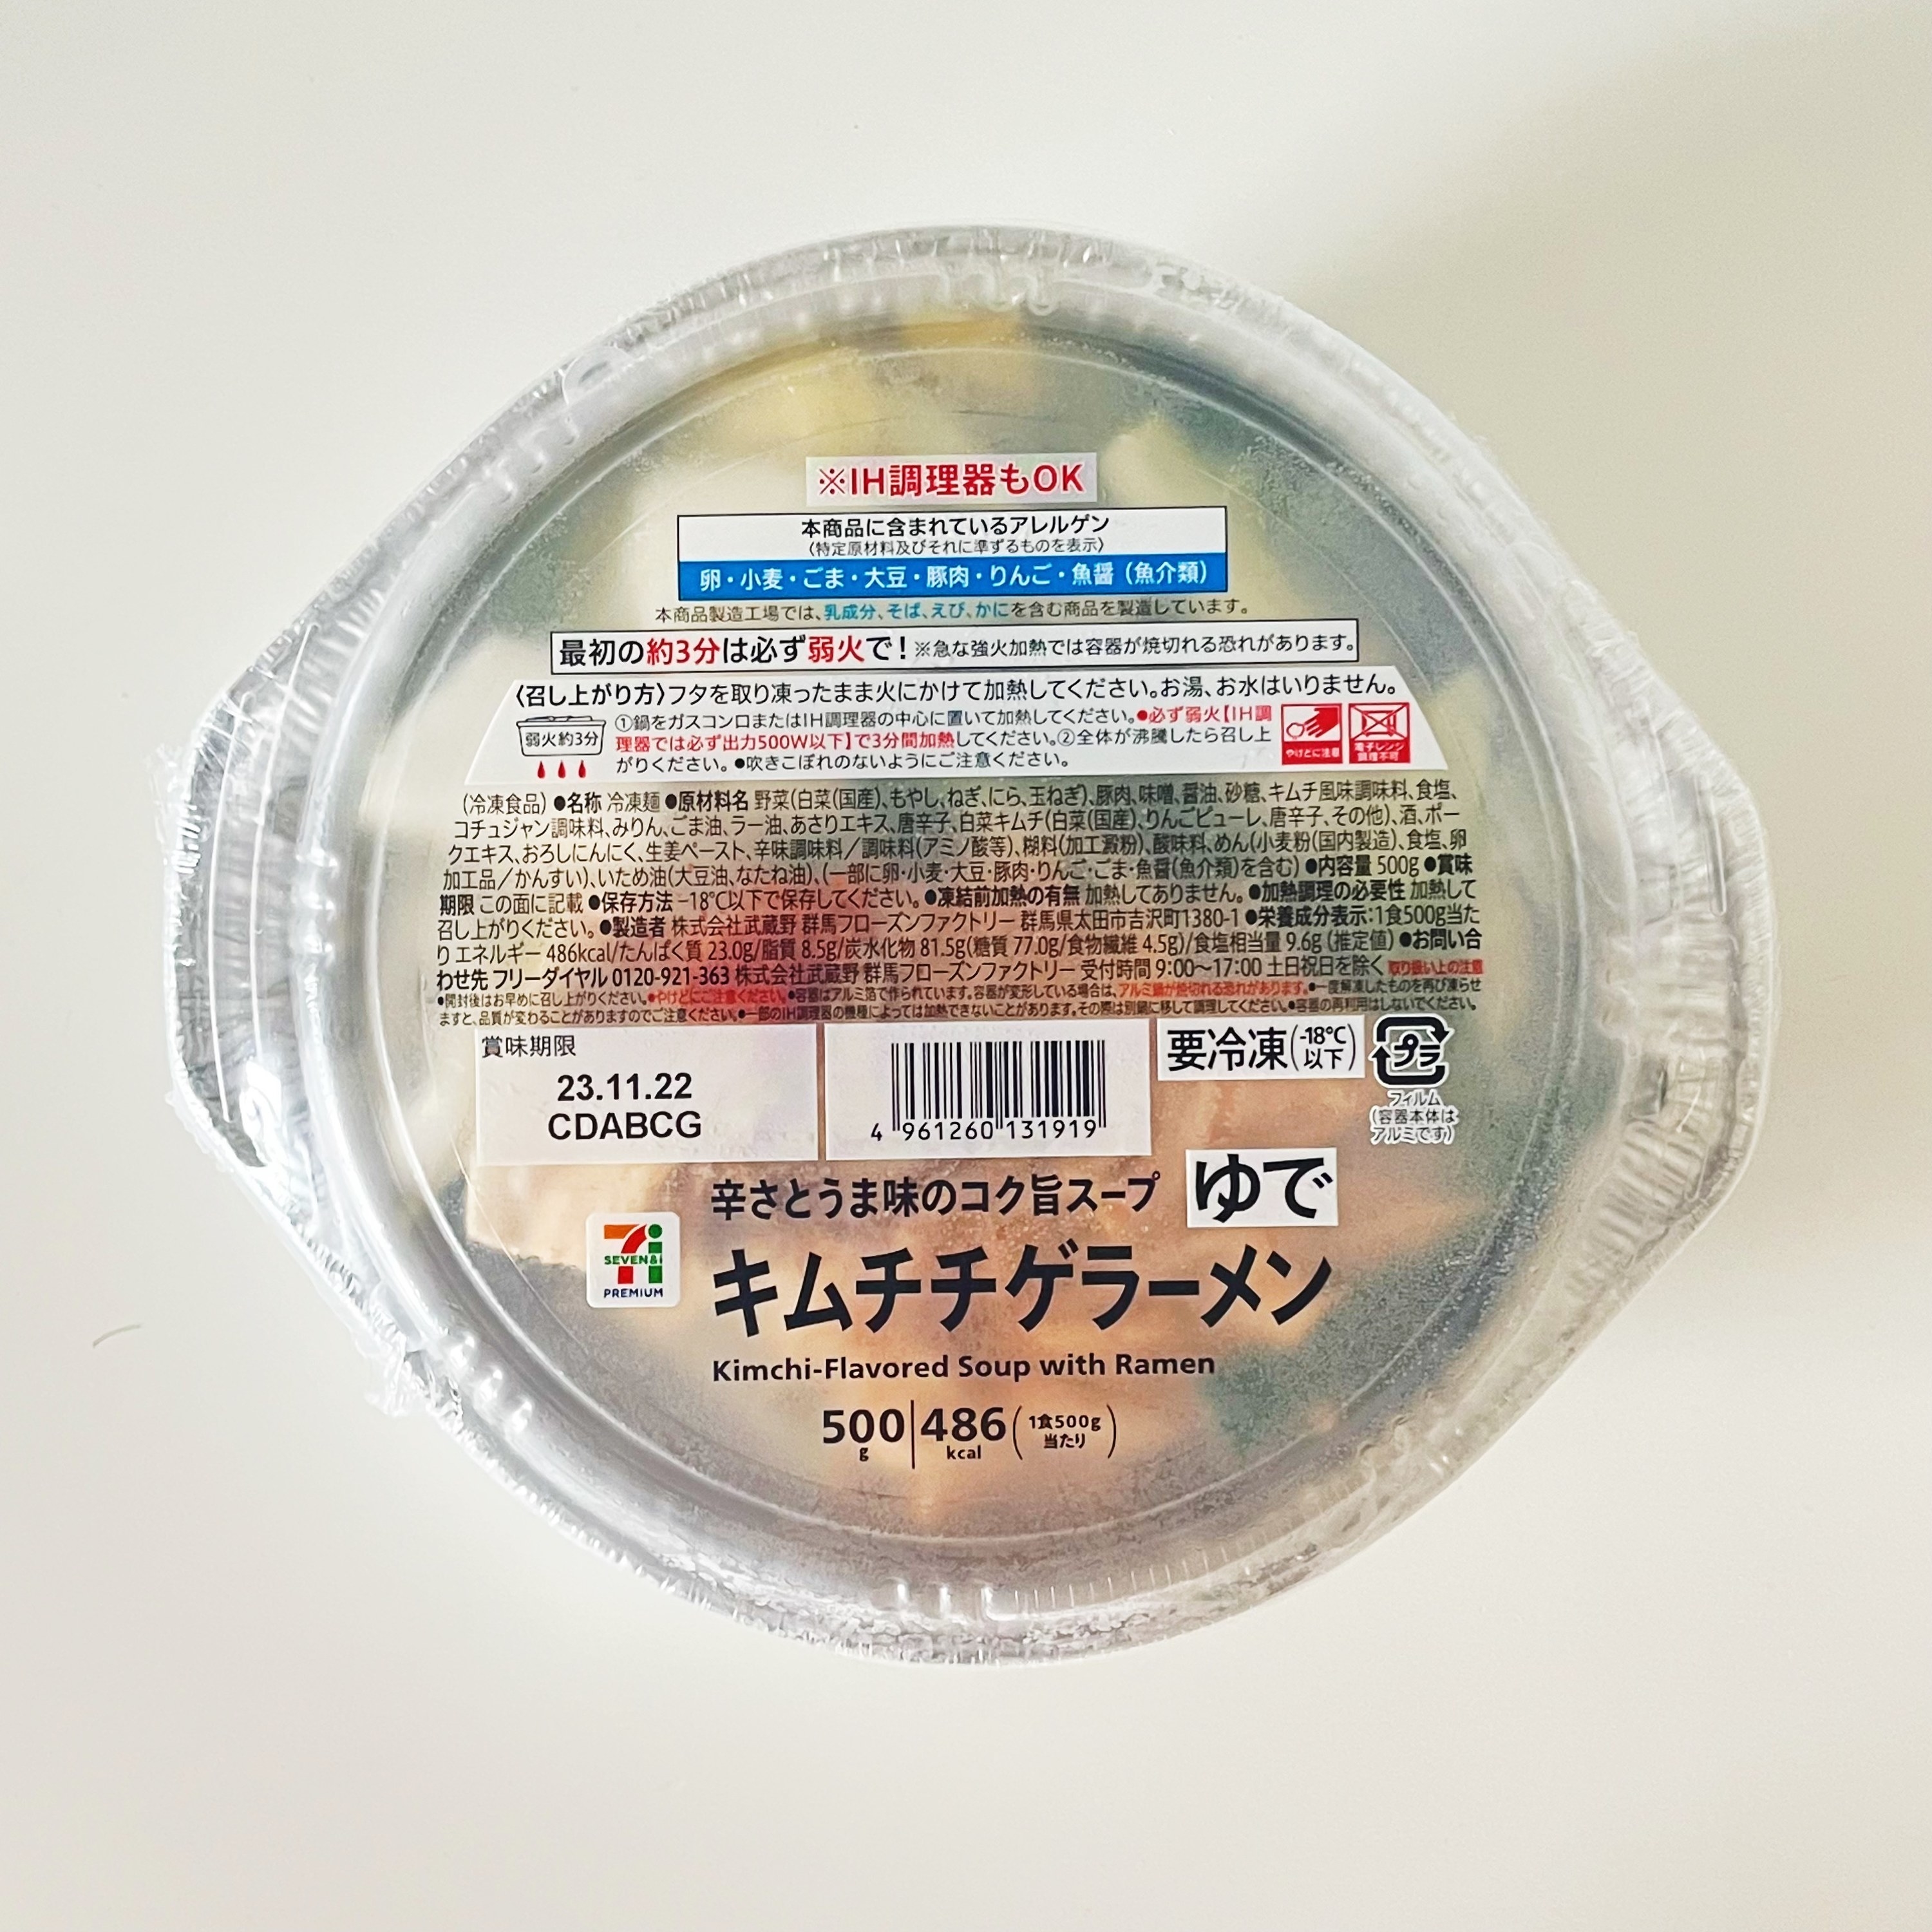 セブン-イレブンのおすすめの冷凍麺「キムチチゲラーメン 500g」